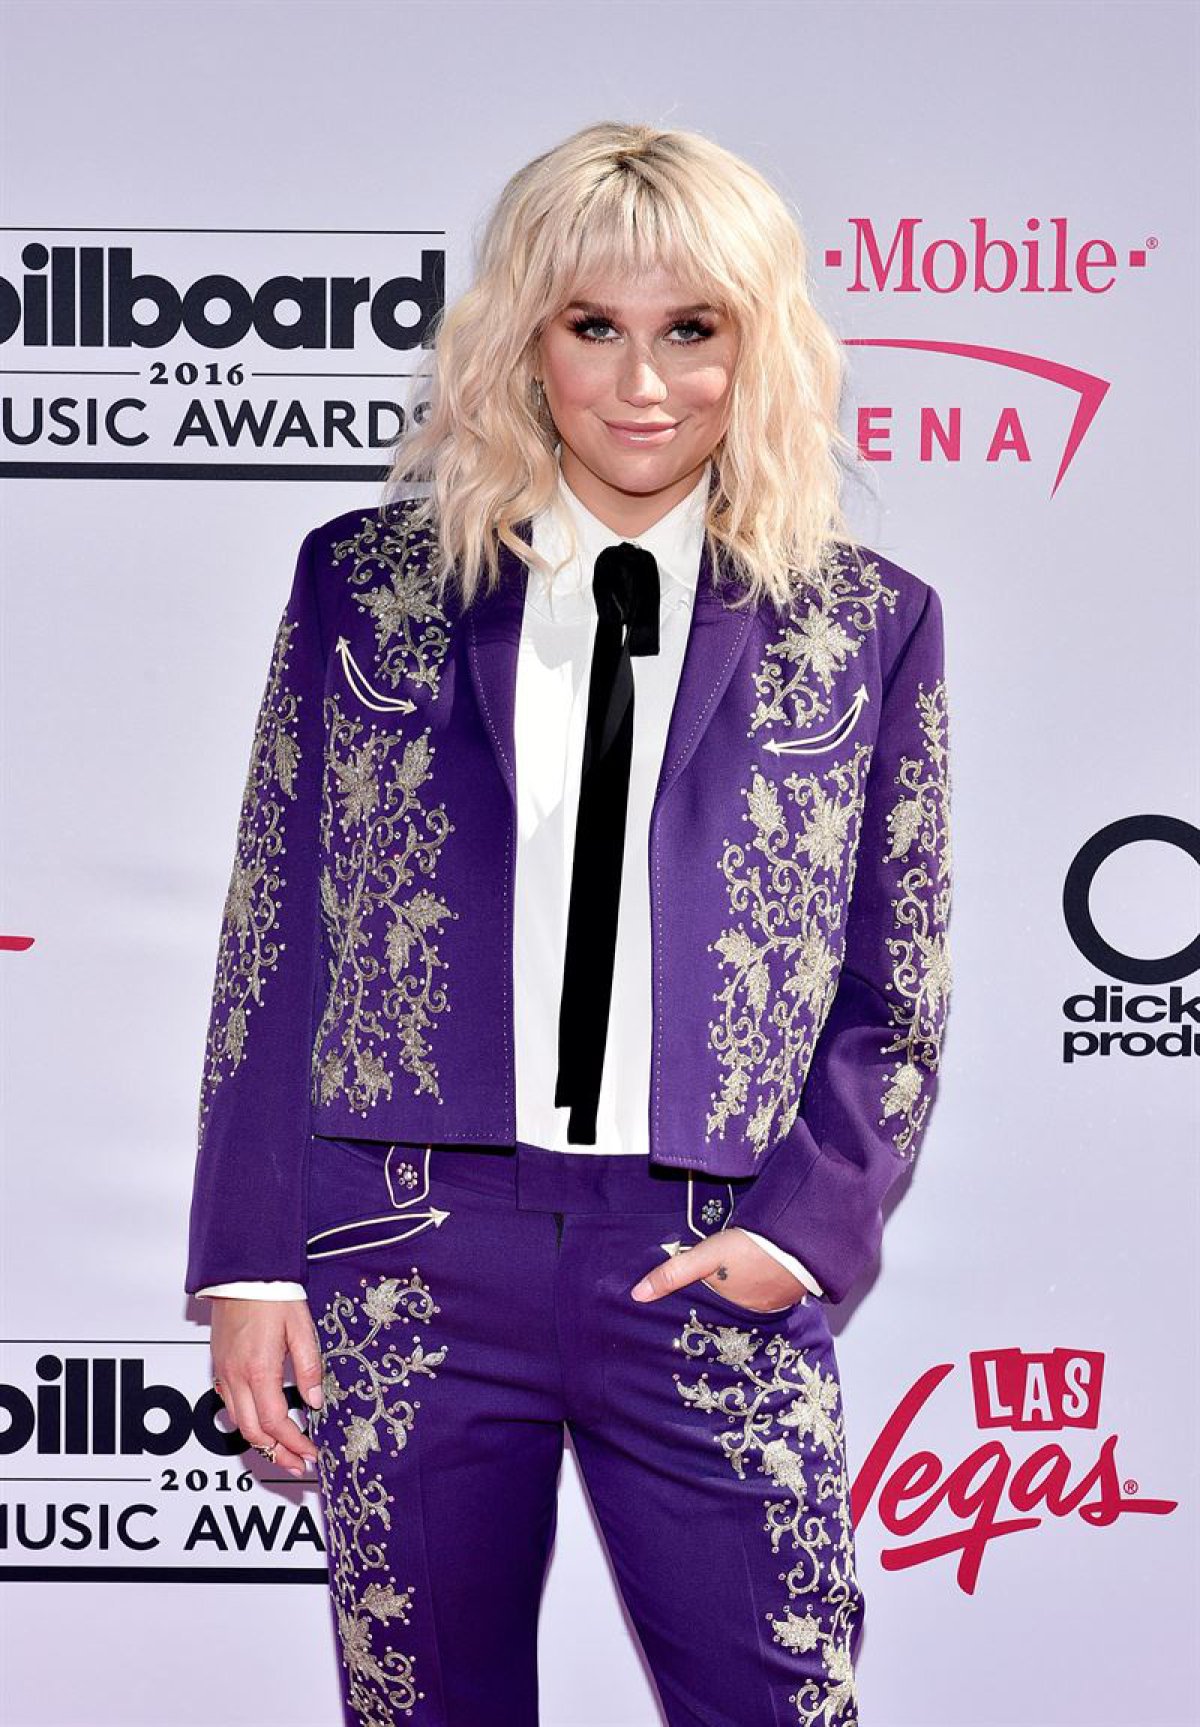 Los peores looks de los Billboard Music Awards